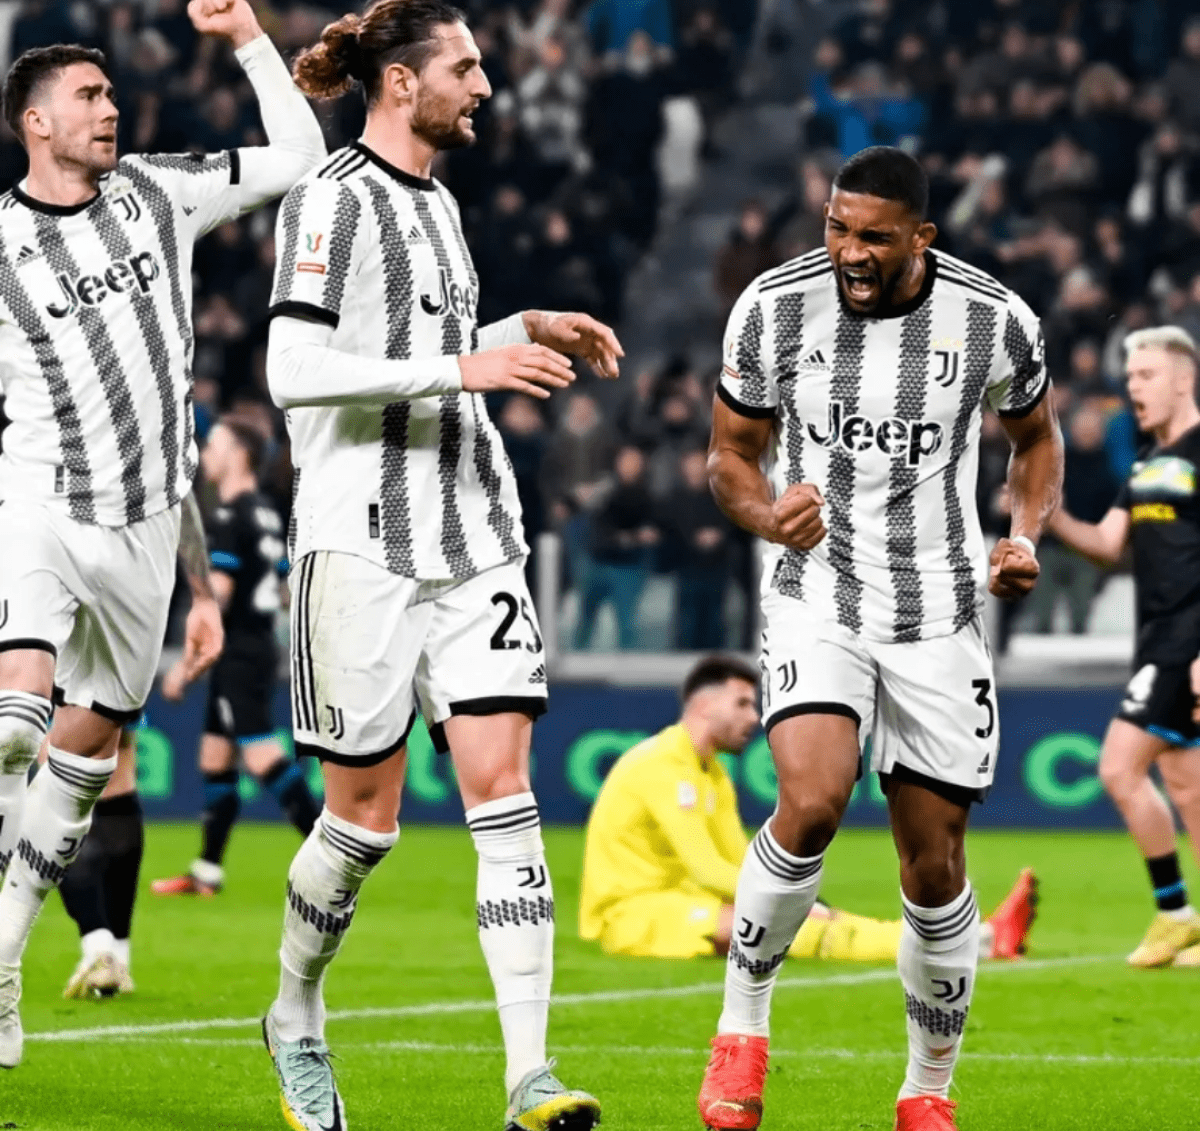 Coppa Italia, Juventus-Lazio (1-0): l'analisi tattica